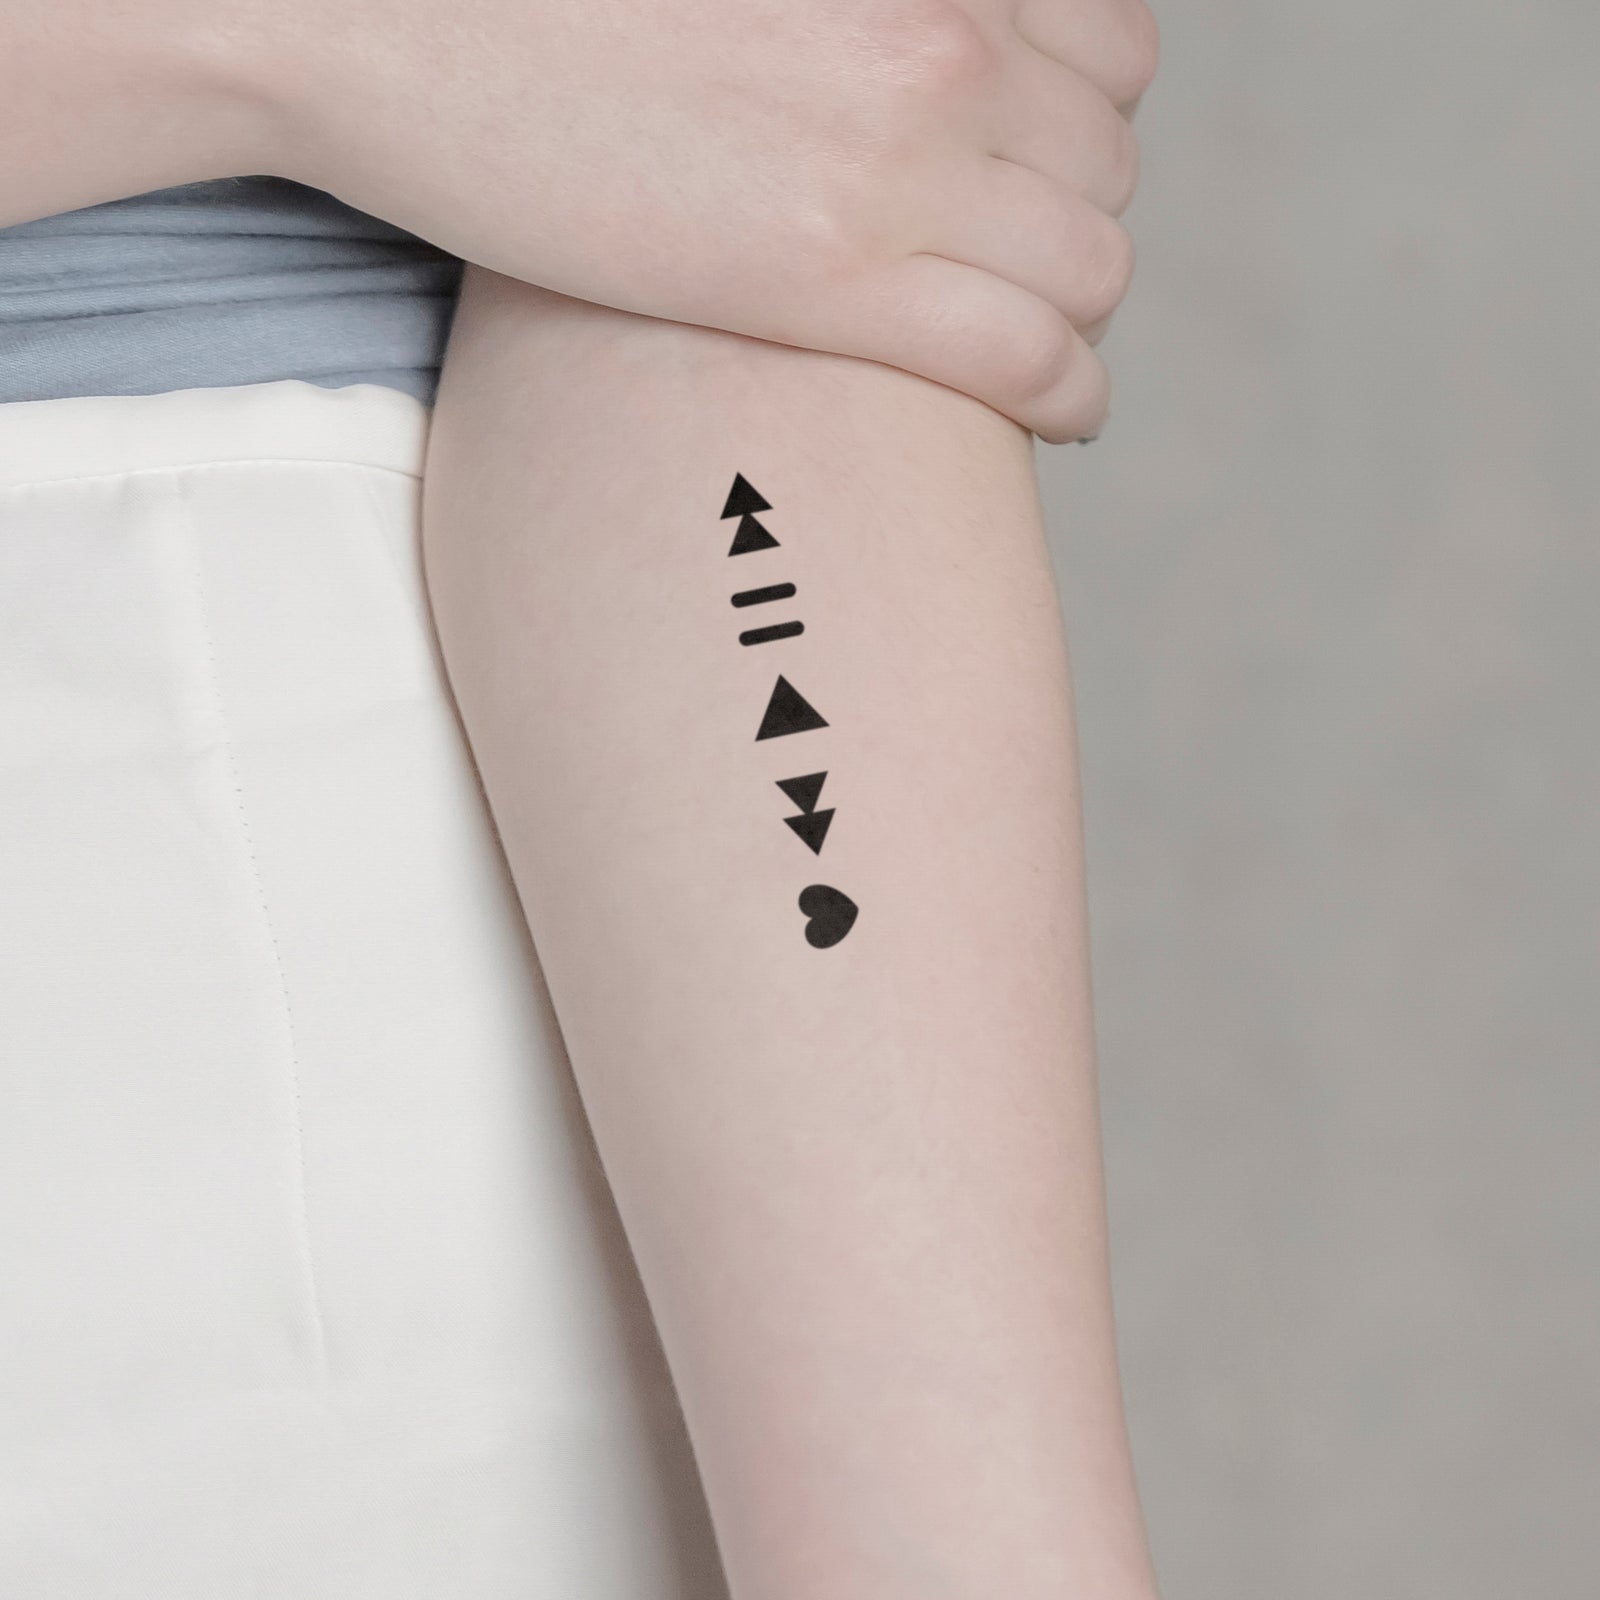 Tattoo on Pinterest | 19 Pins | Drum tattoo, Tattoos, Guitar tattoo